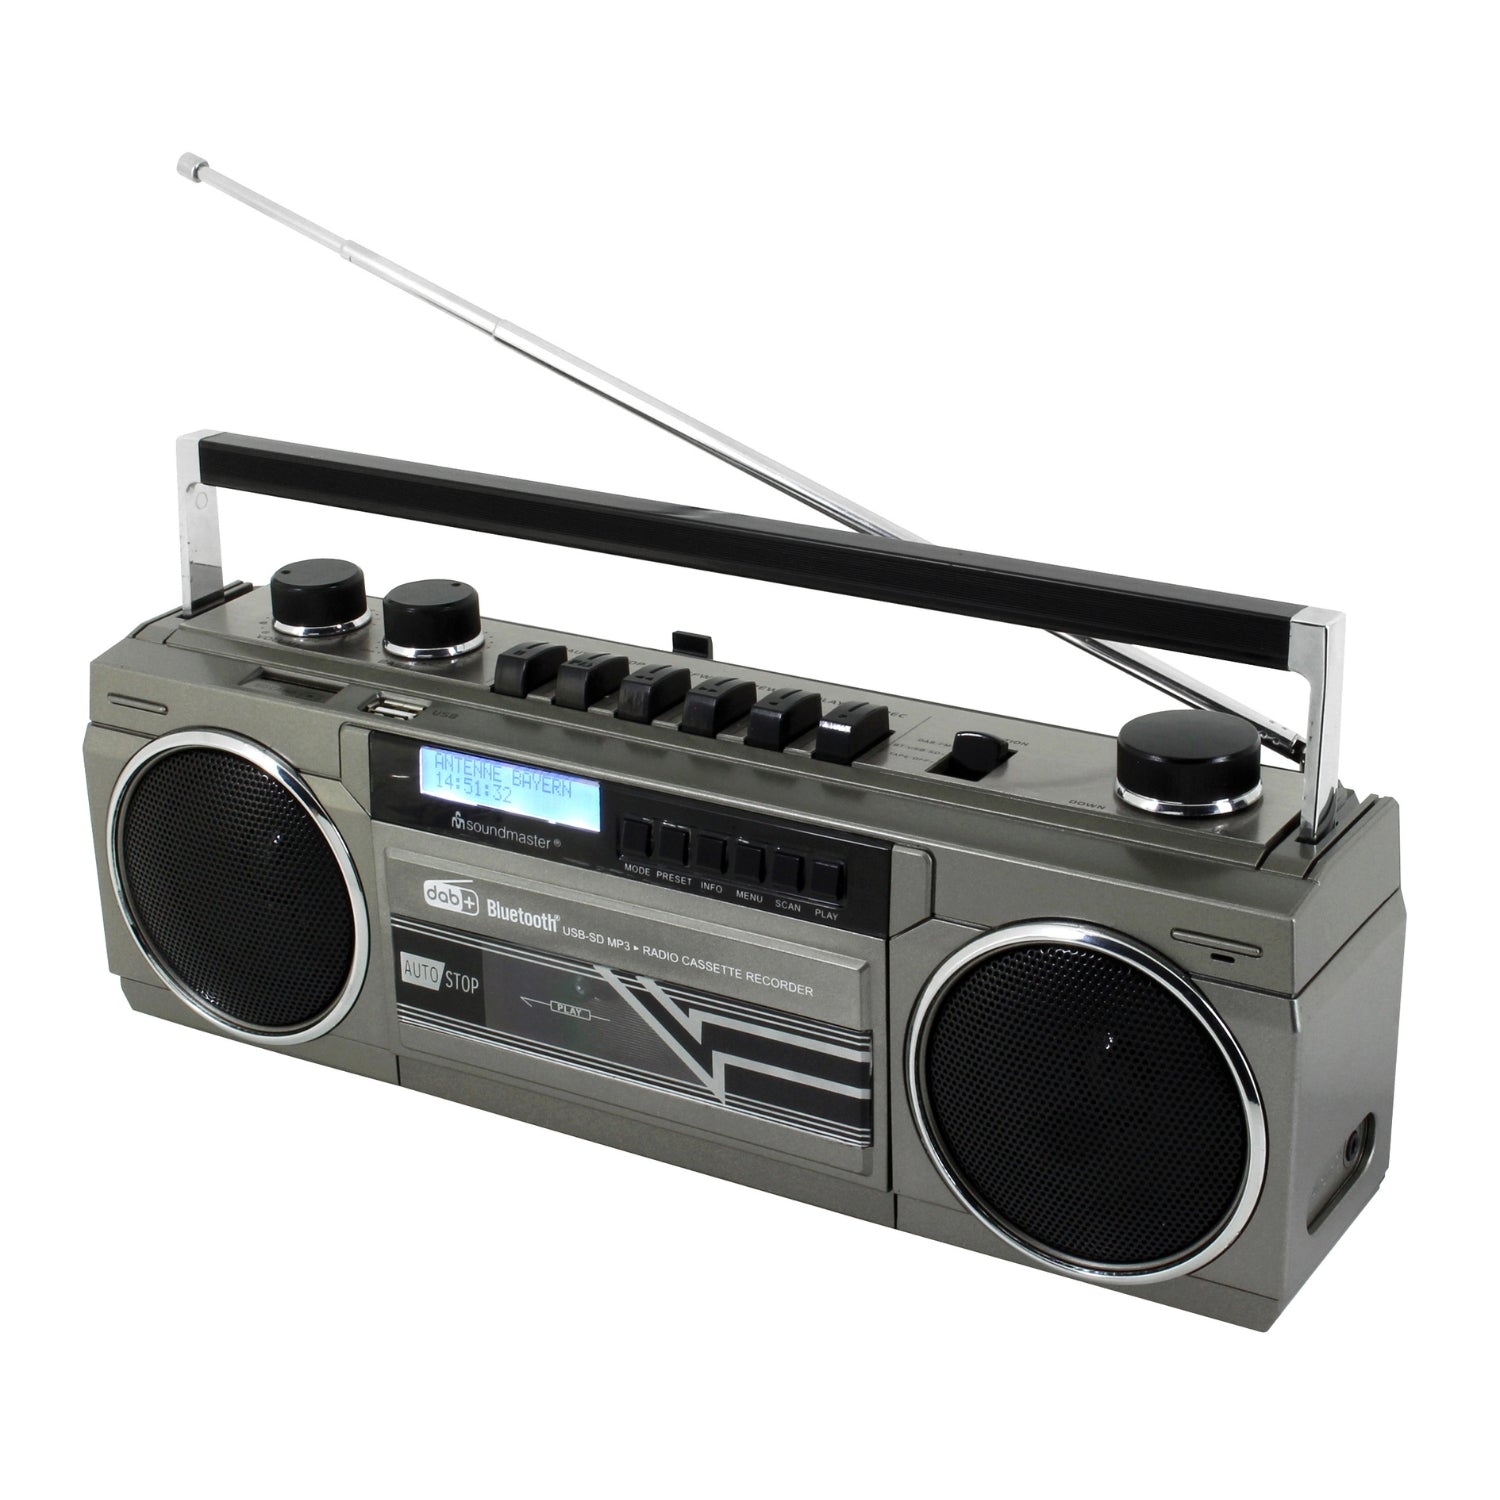 Soundmaster SRR70TI enregistreur radio cassette rétro avec DAB+ USB SD et Bluetooth